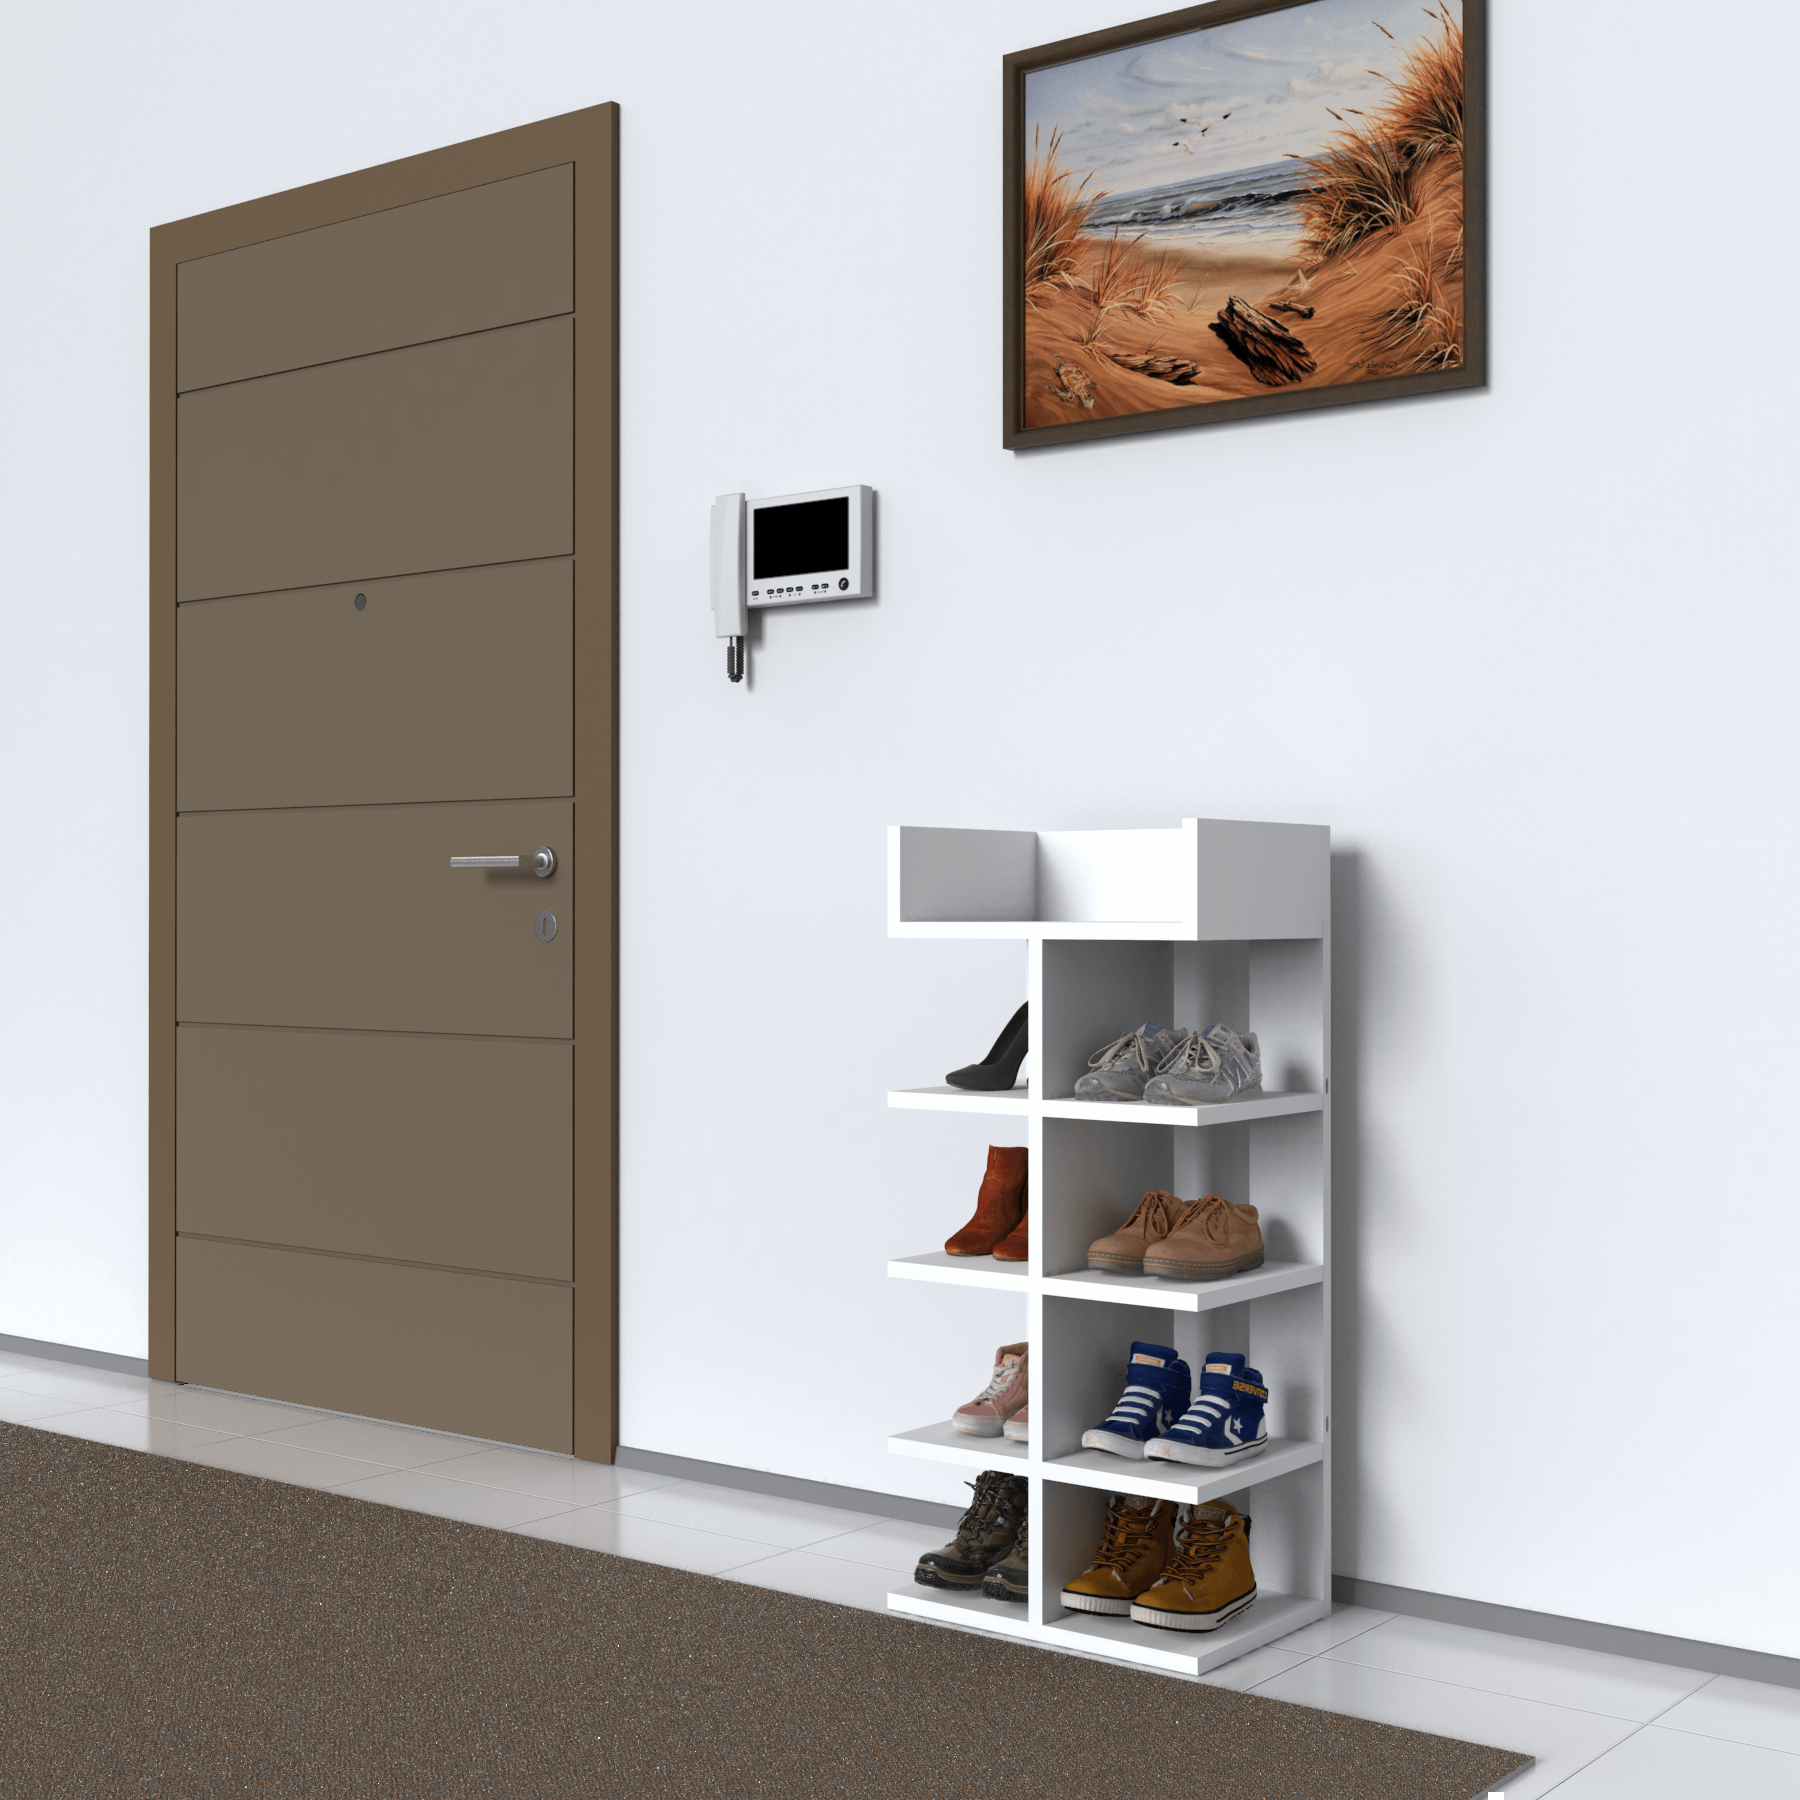 Mimilos A11 Shoe Cabinet